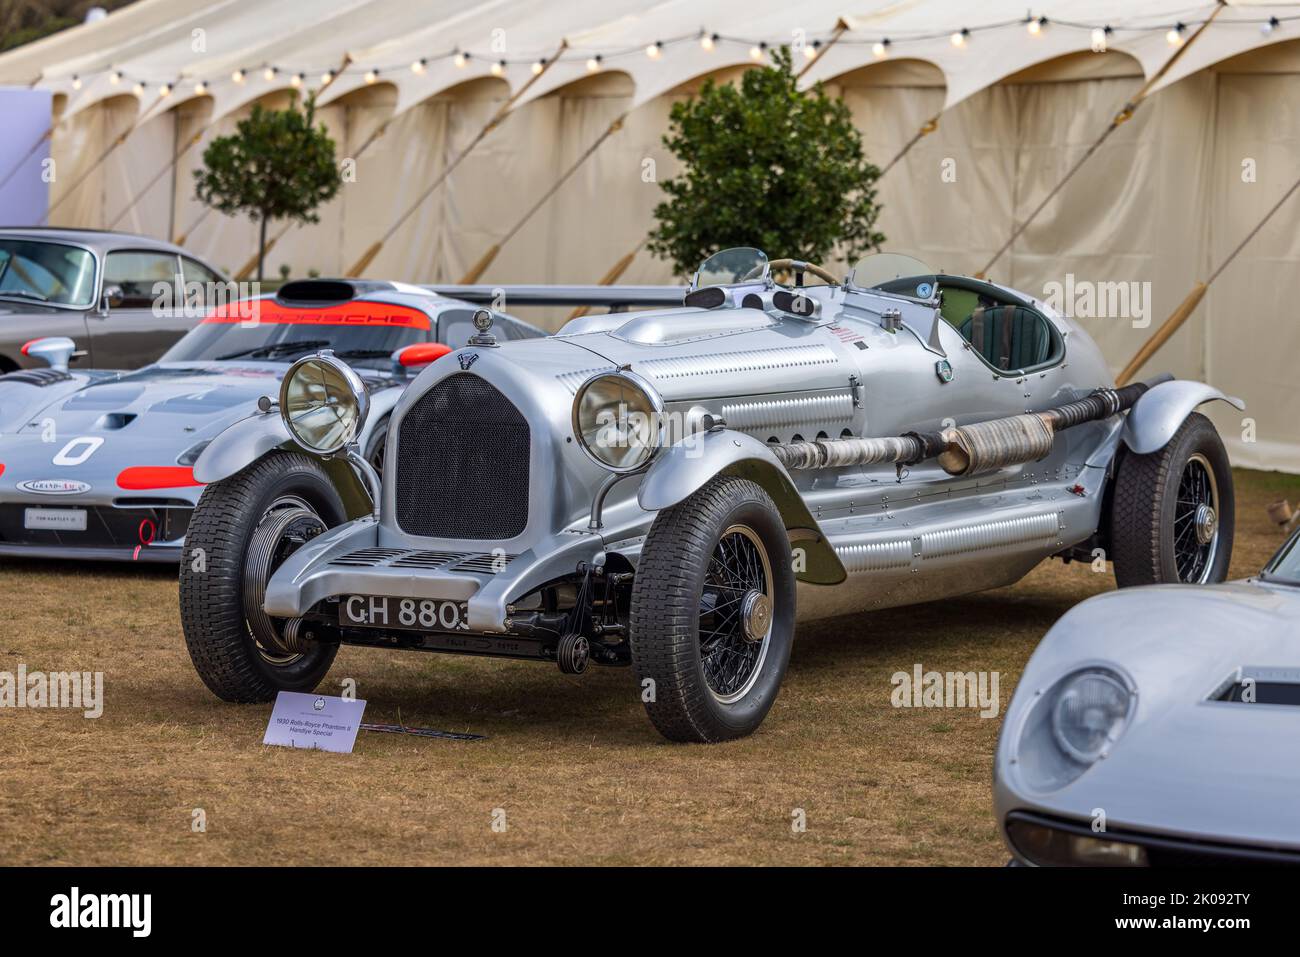 1930 Rolls-Royce Phantom II Handlye Special ‘GH 8803’ fa parte della Platinum Collection di quest’anno al Salon Privé 2022 che si tiene a Blenheim Palace Foto Stock